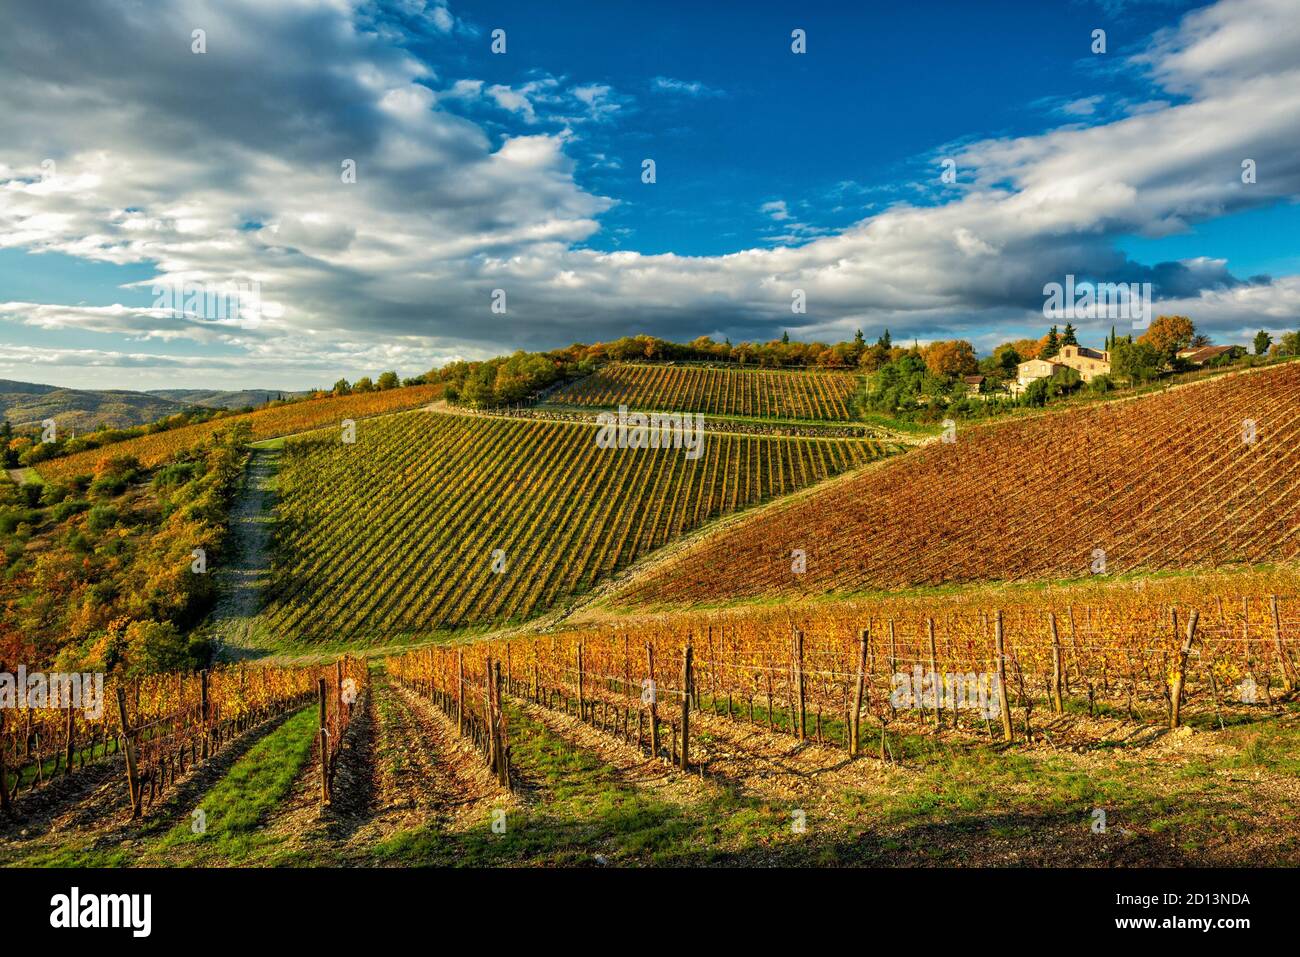 Un incroyable vignoble propre au vin Ama Chianti Classico, situé à Gaiole in Chianti, Toscane (Italie) Banque D'Images